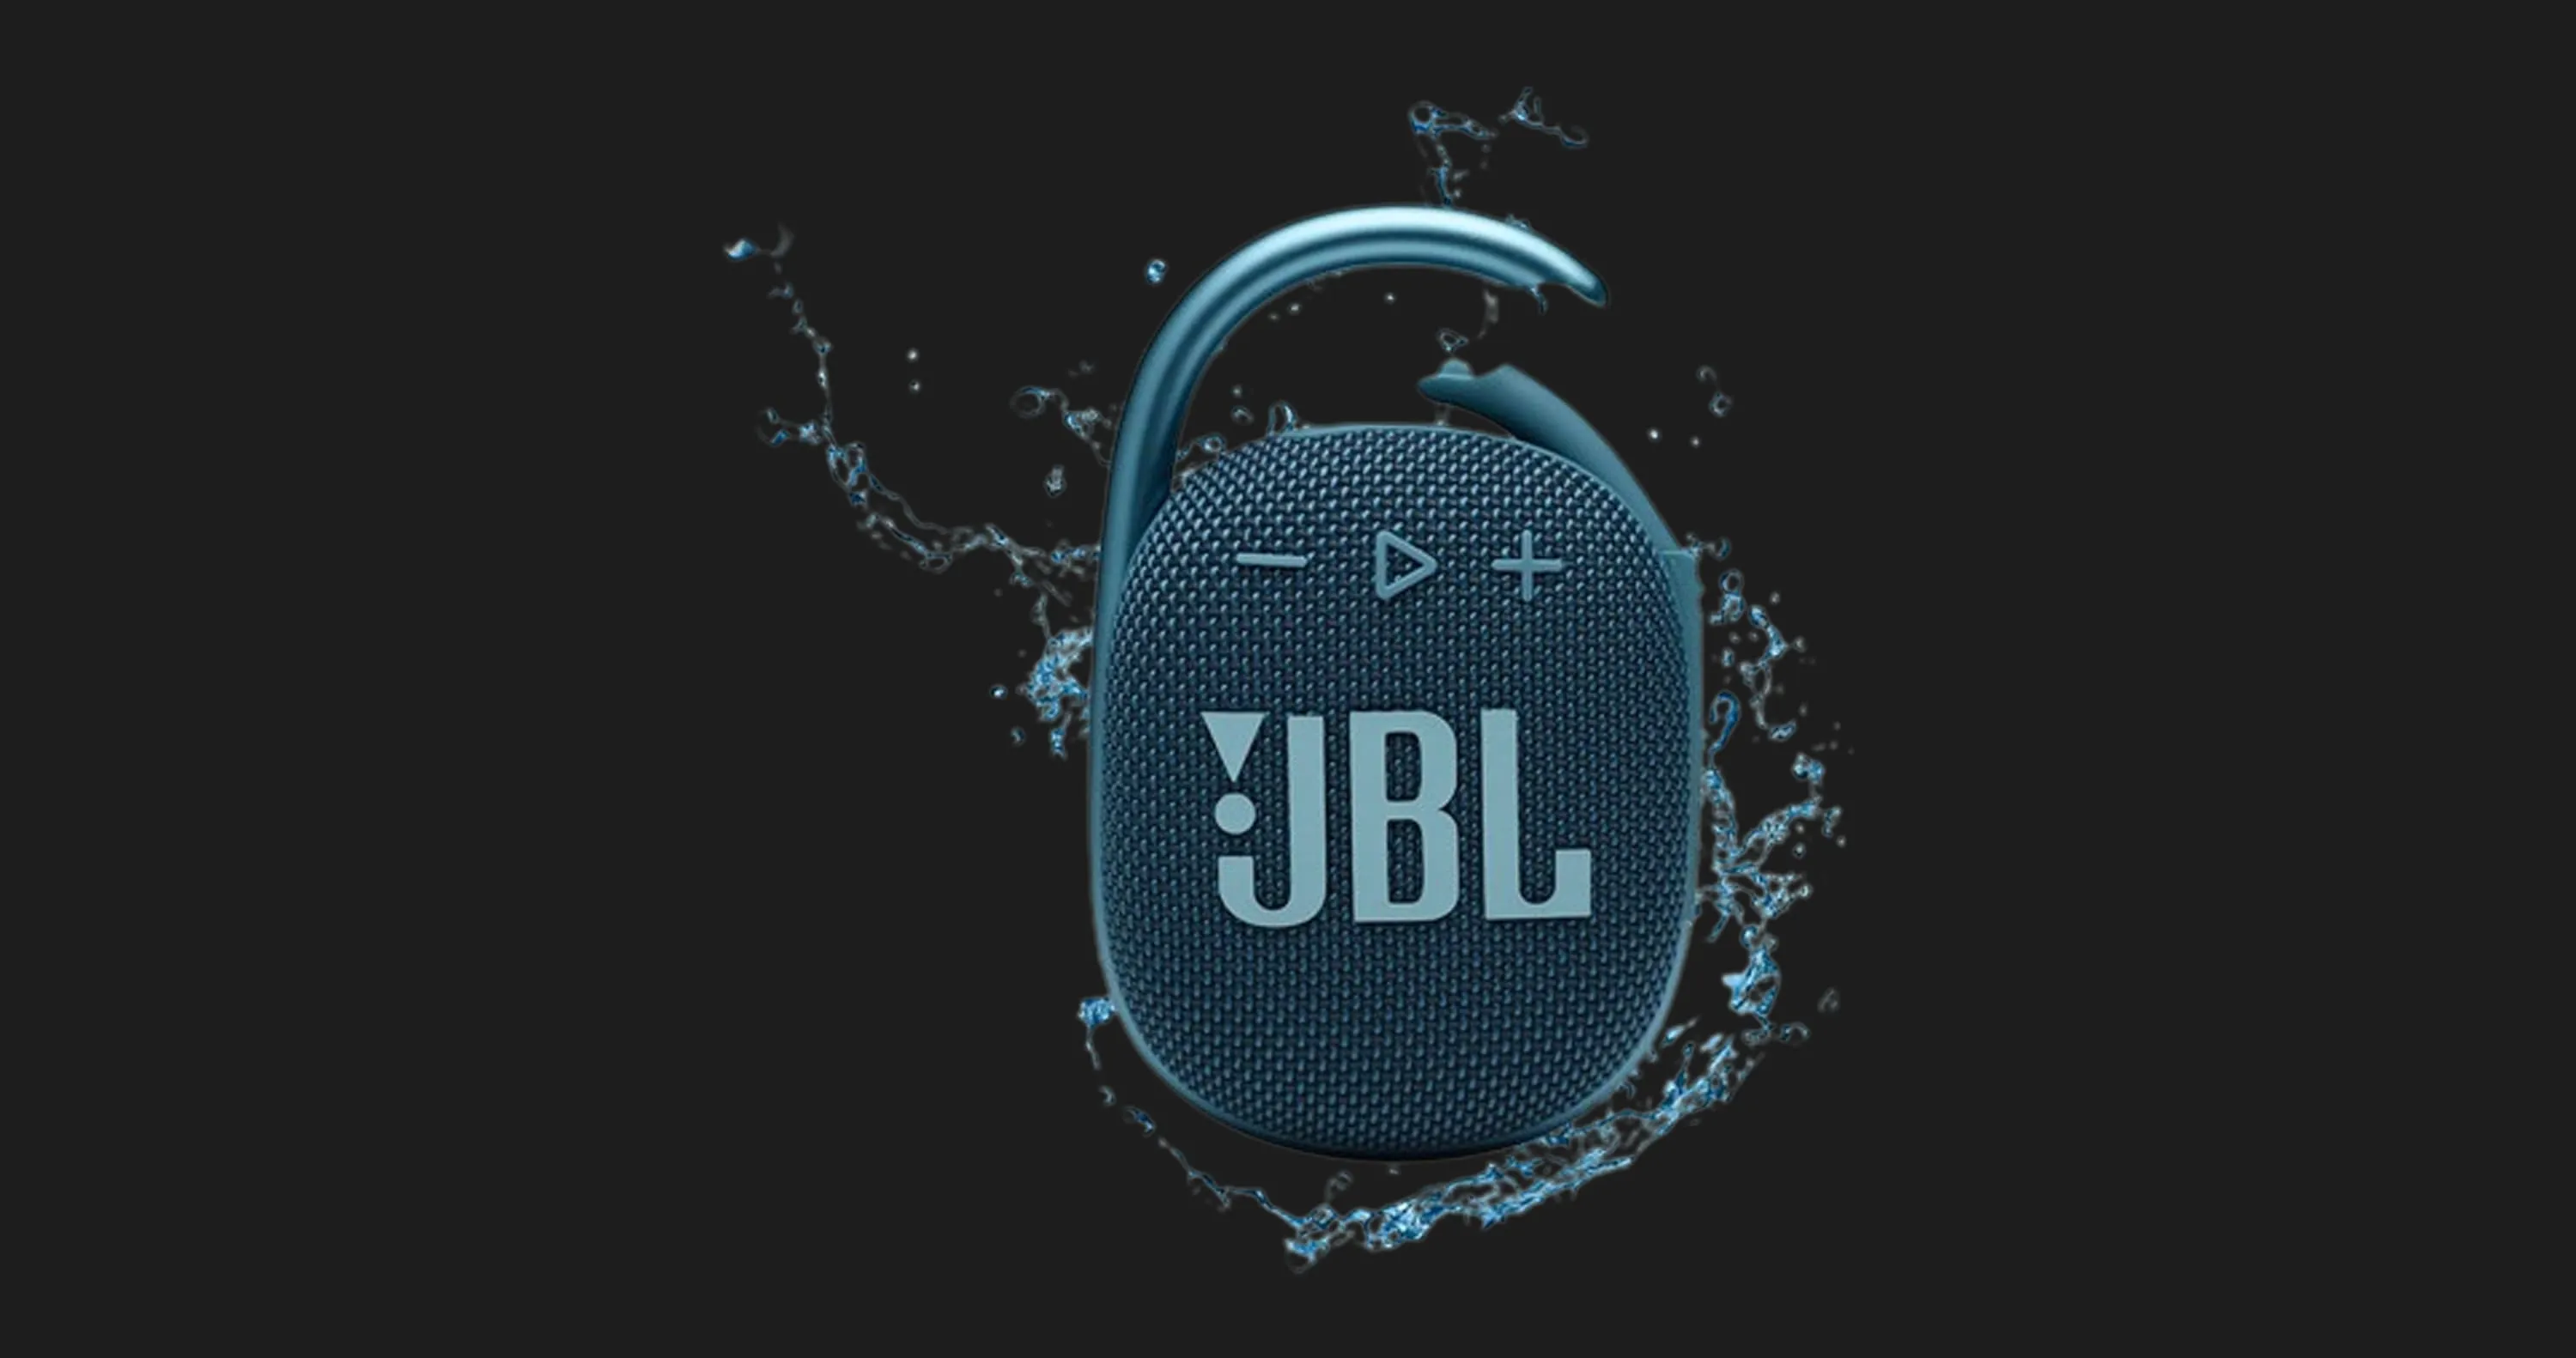 Портативная акустика JBL Clip 4 (Blue/Pink)